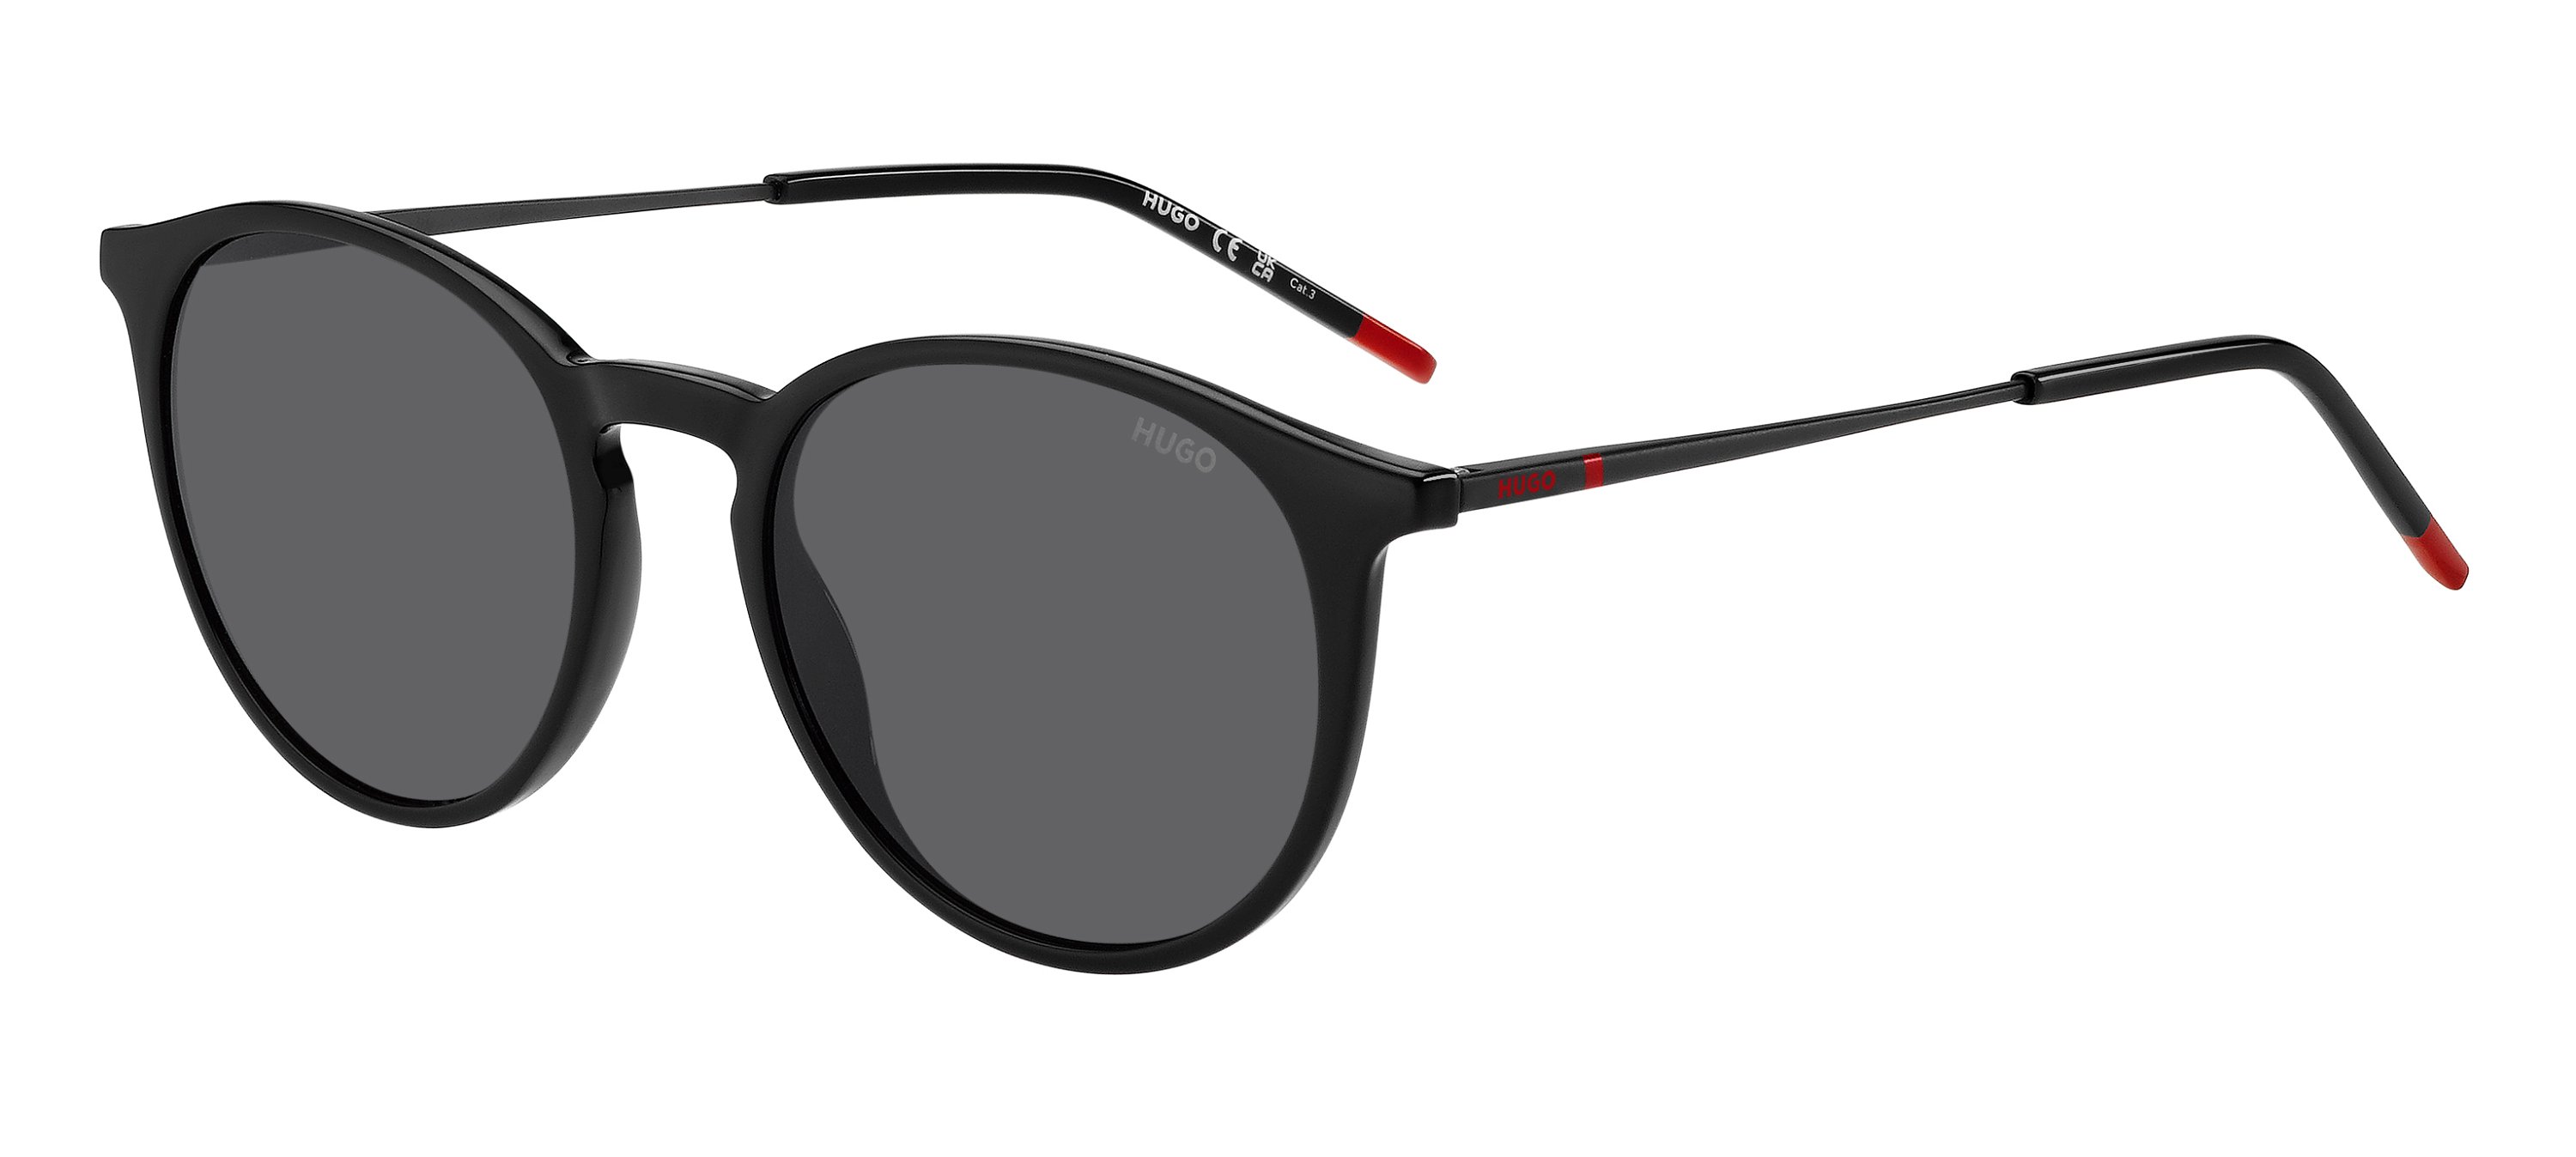 Das Bild zeigt die Sonnenbrille HG1286/S OIT von der Marke Hugo in schwarz/rot.